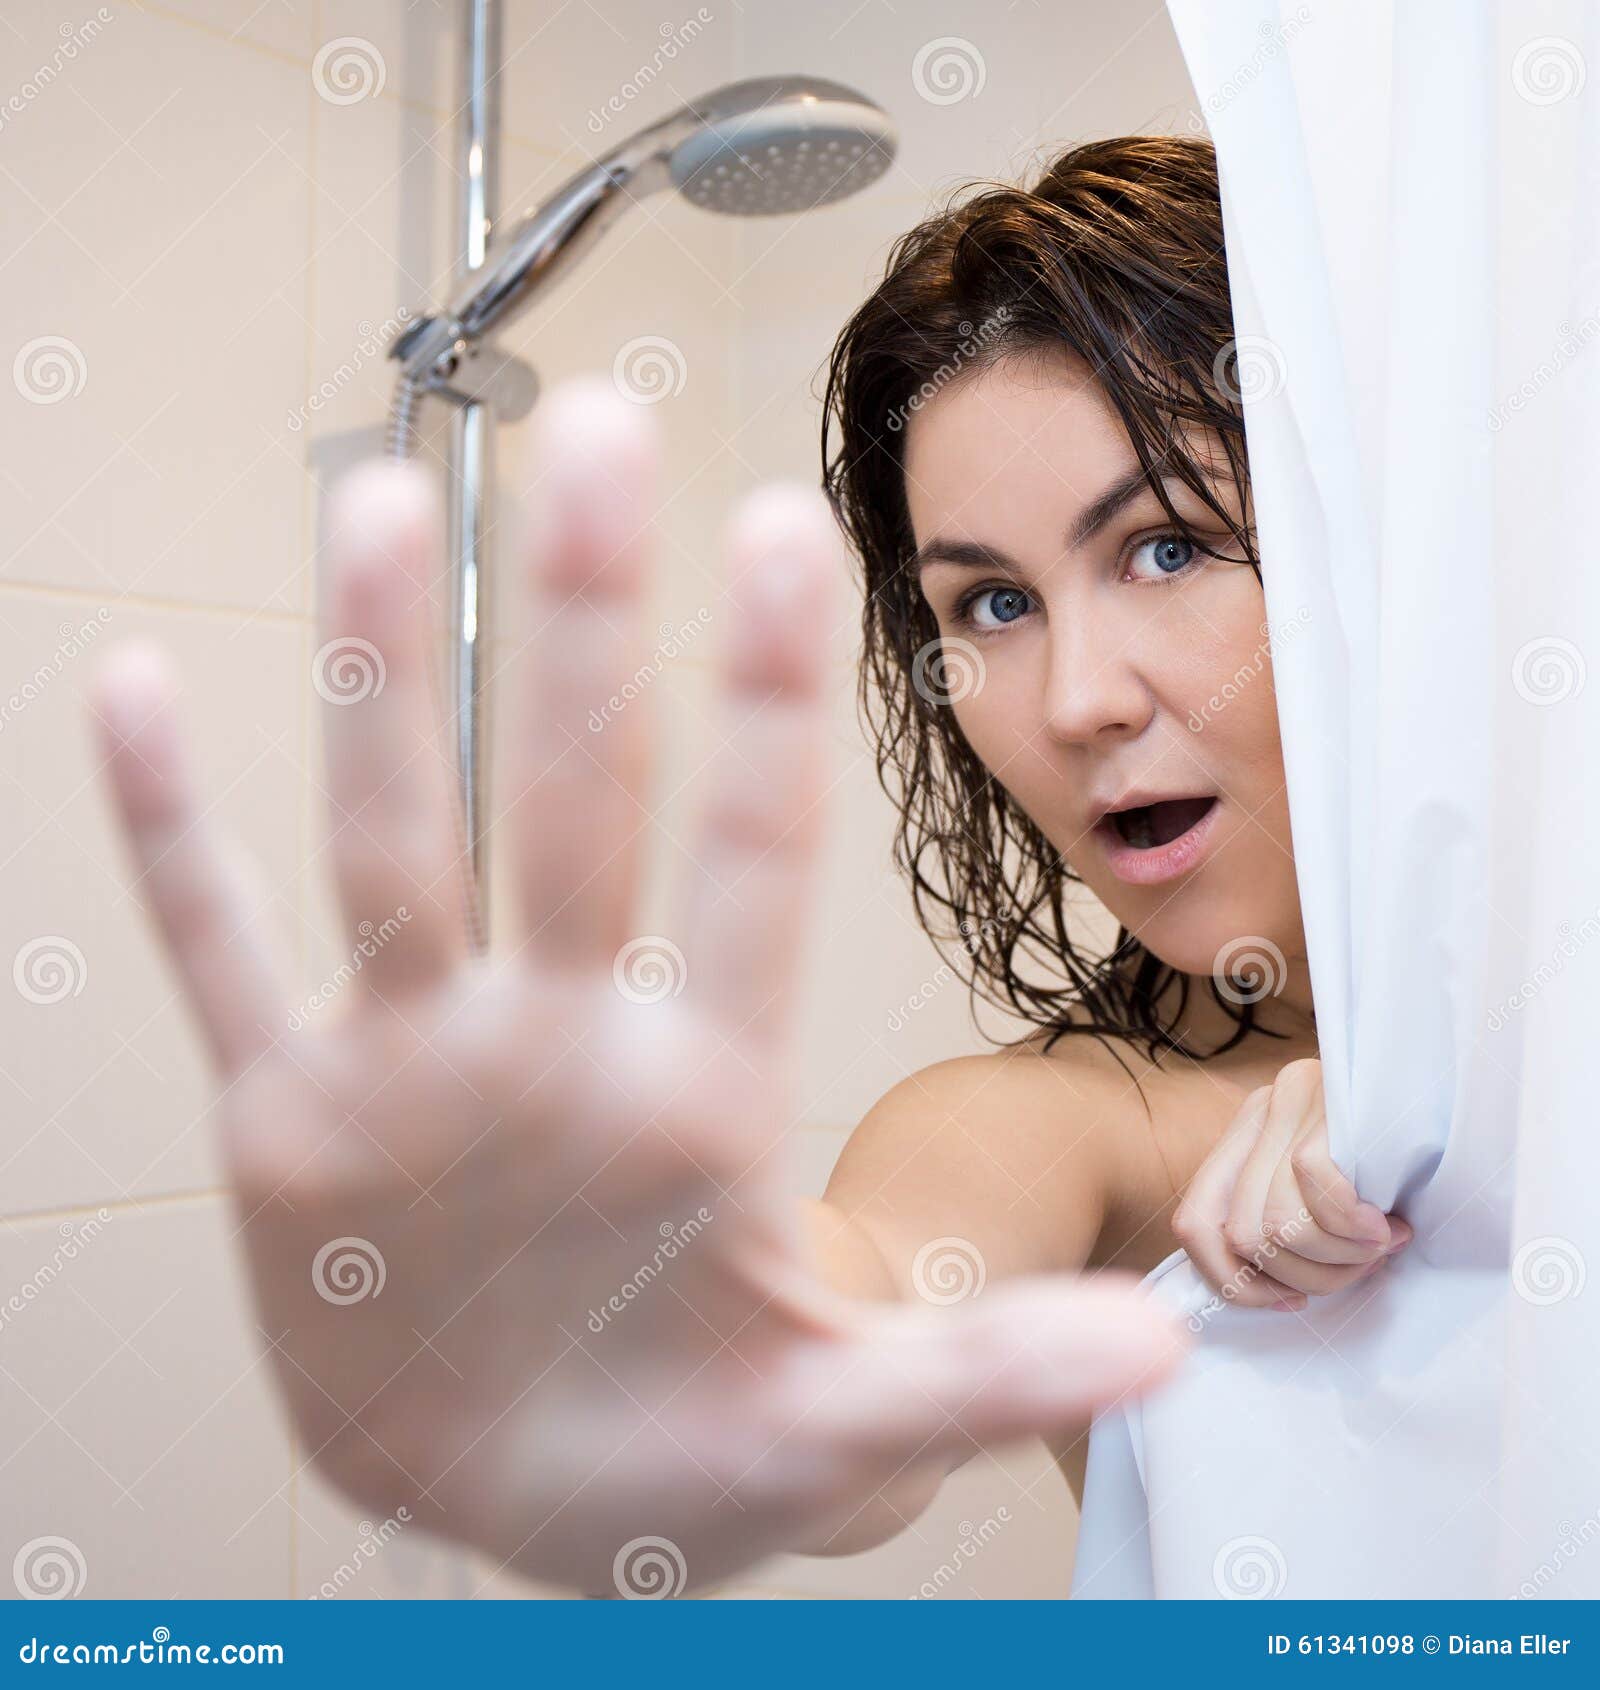 Зрелая мама в душе. Девушка в ванной за шторкой. Женщина в душе прикрывается. Взрослые женщины в душе. Девушка в душе за шторкой.